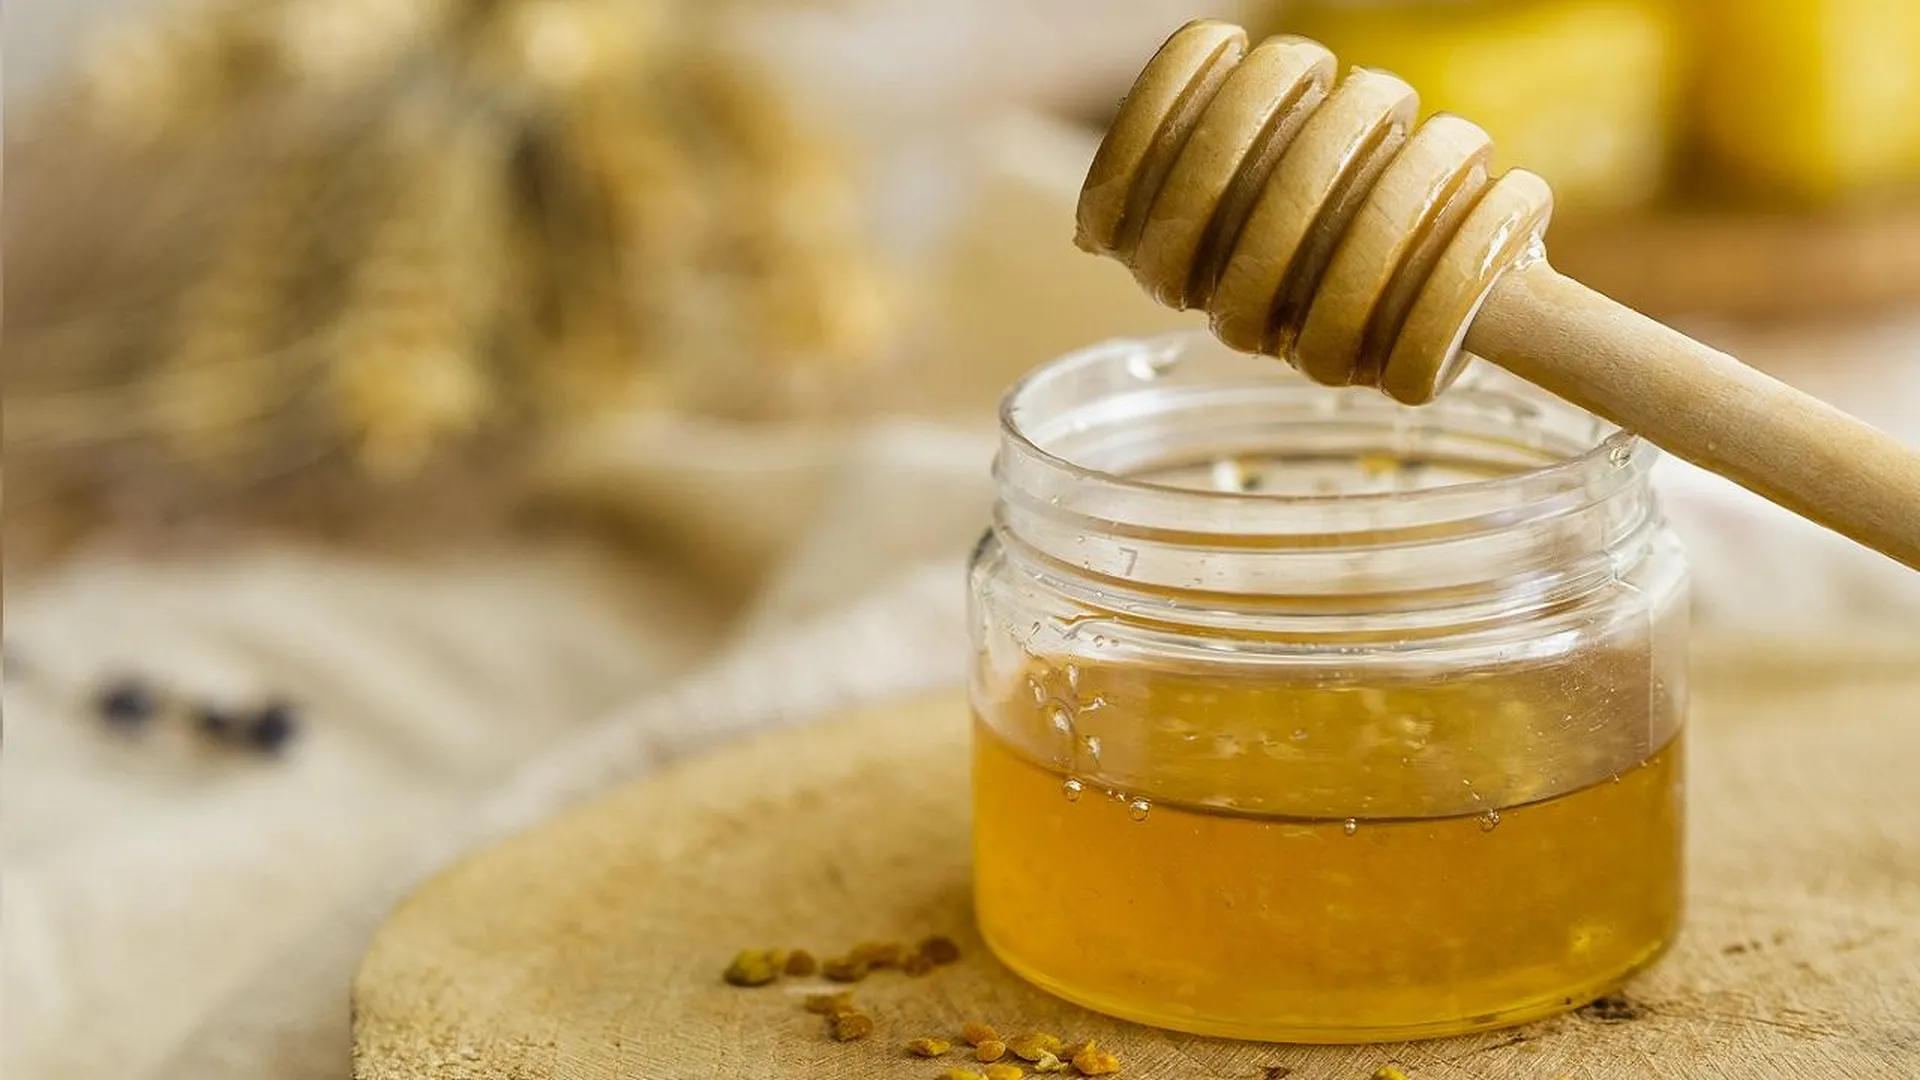 Влага, свет и упаковка: из-за каких ошибок в хранении быстро портится даже качественный мед